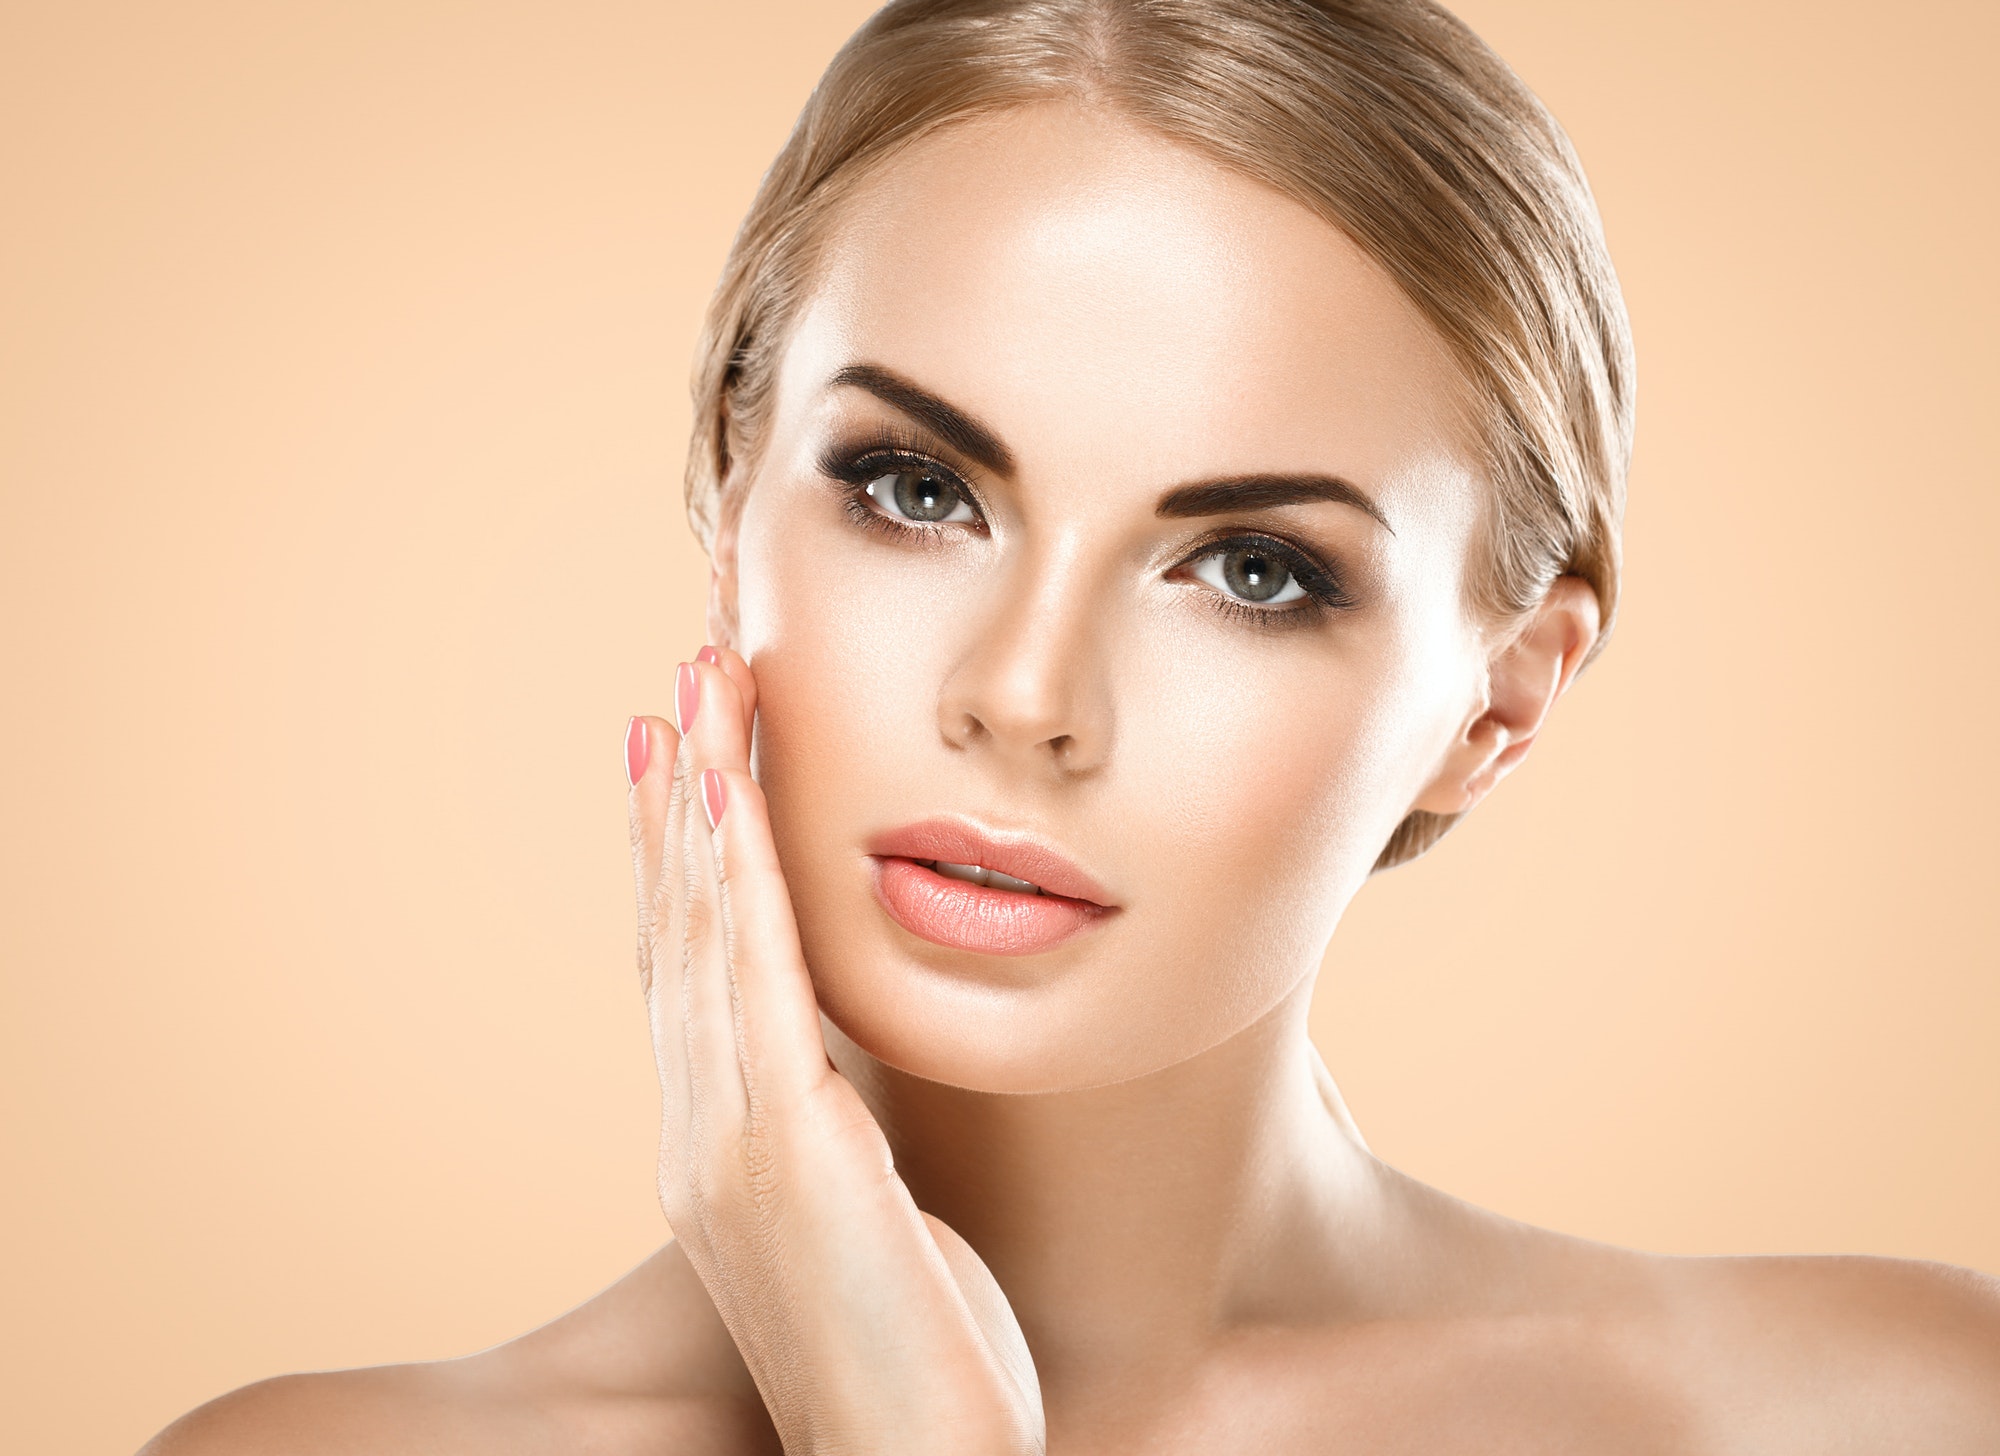 Beauty skin woman face healthy female skin care portrait